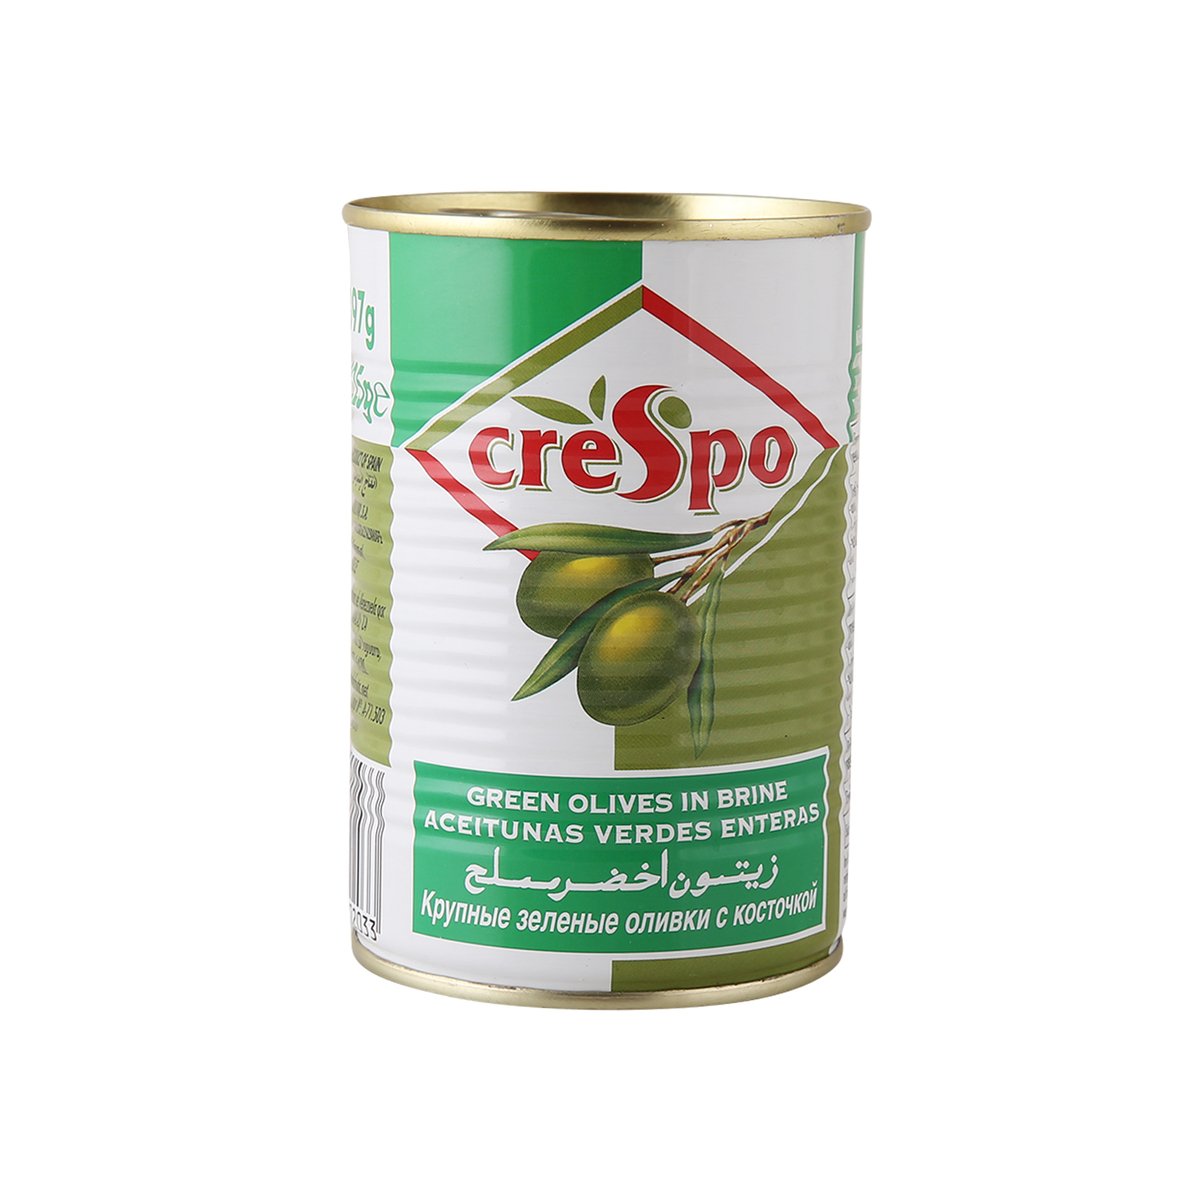 Crespo Green Olives In Brine 225 g